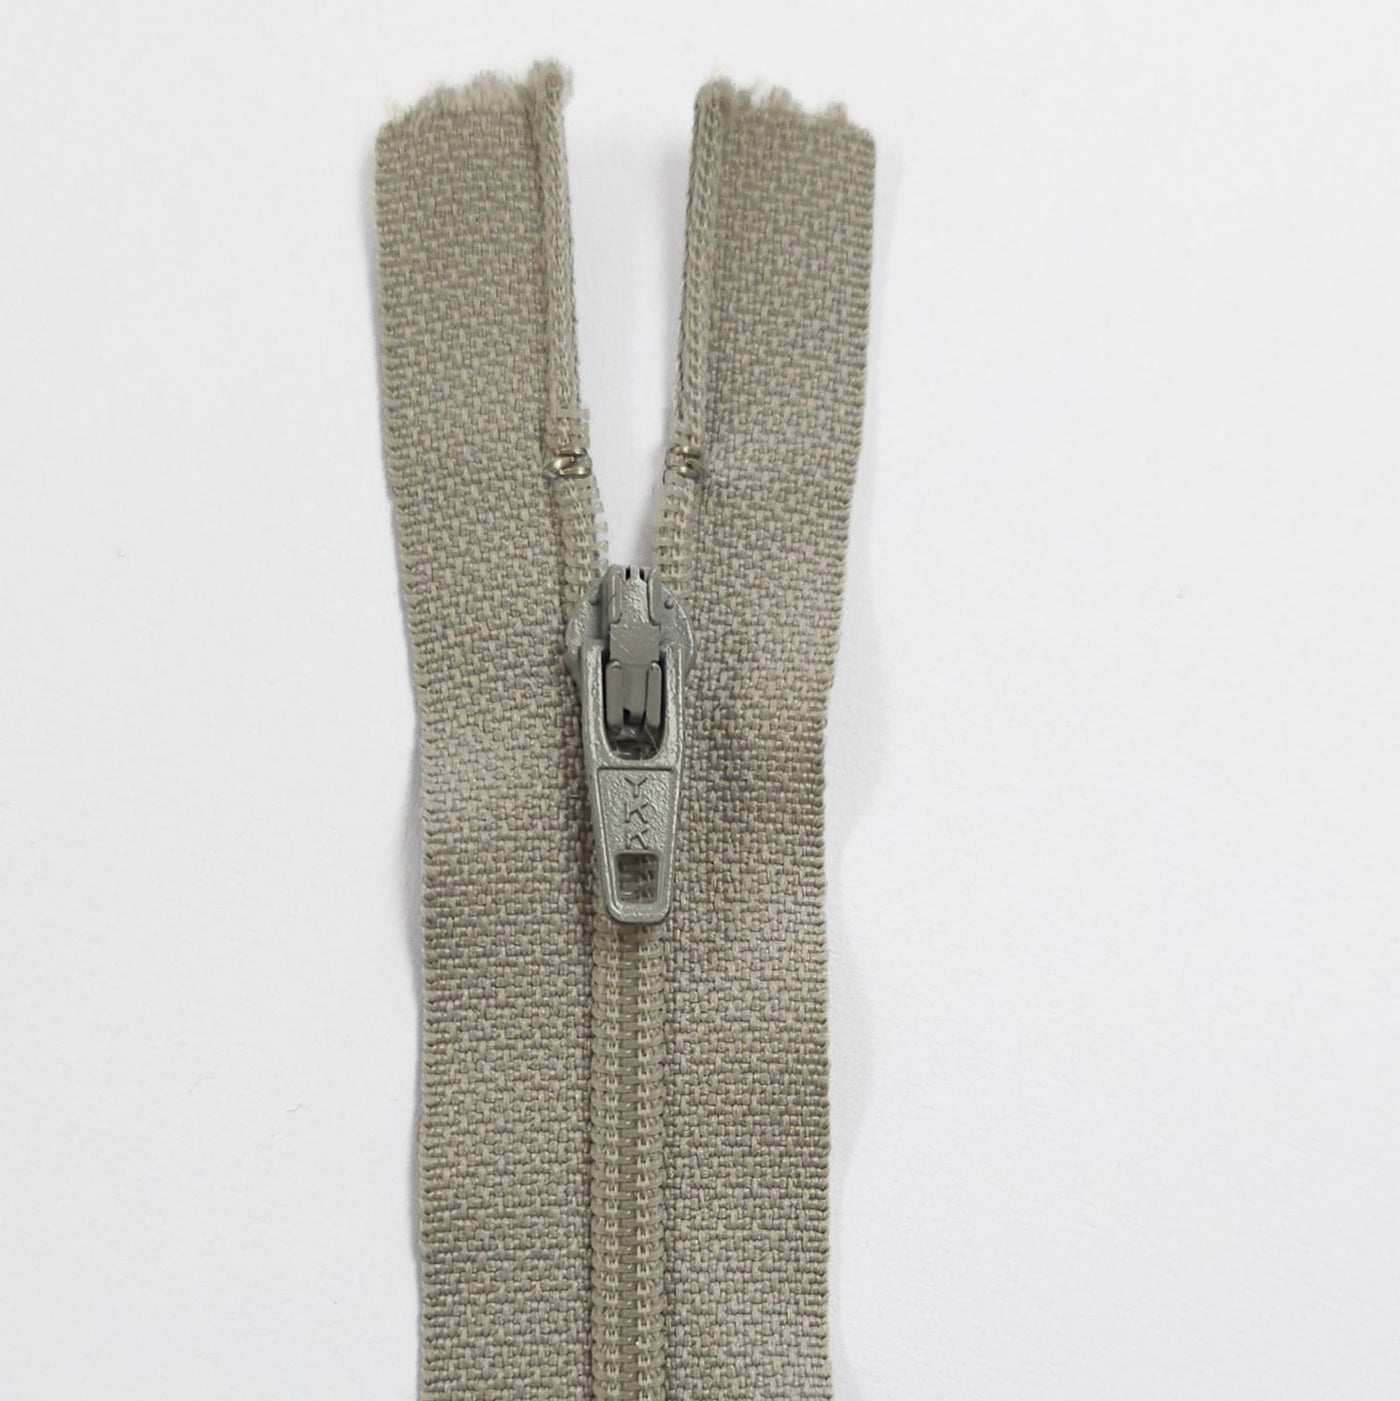 Closed End Nylon Coil Zipper | #3 | 4" / 10 cm